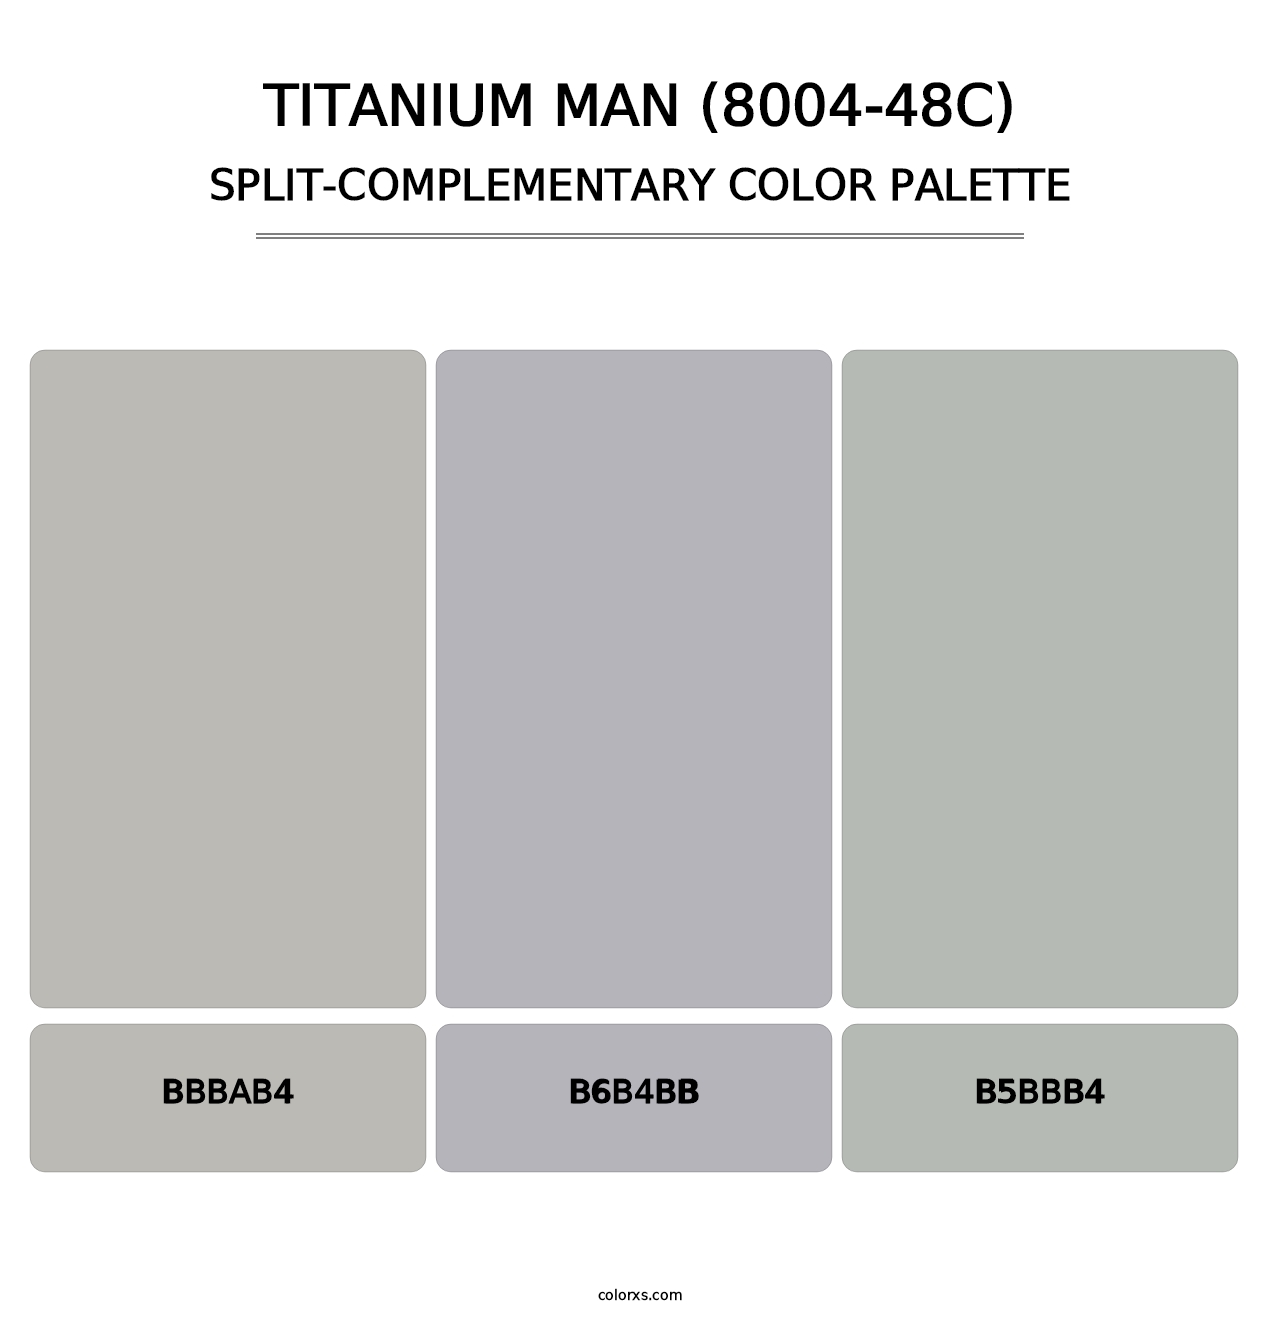 Titanium Man (8004-48C) - Split-Complementary Color Palette